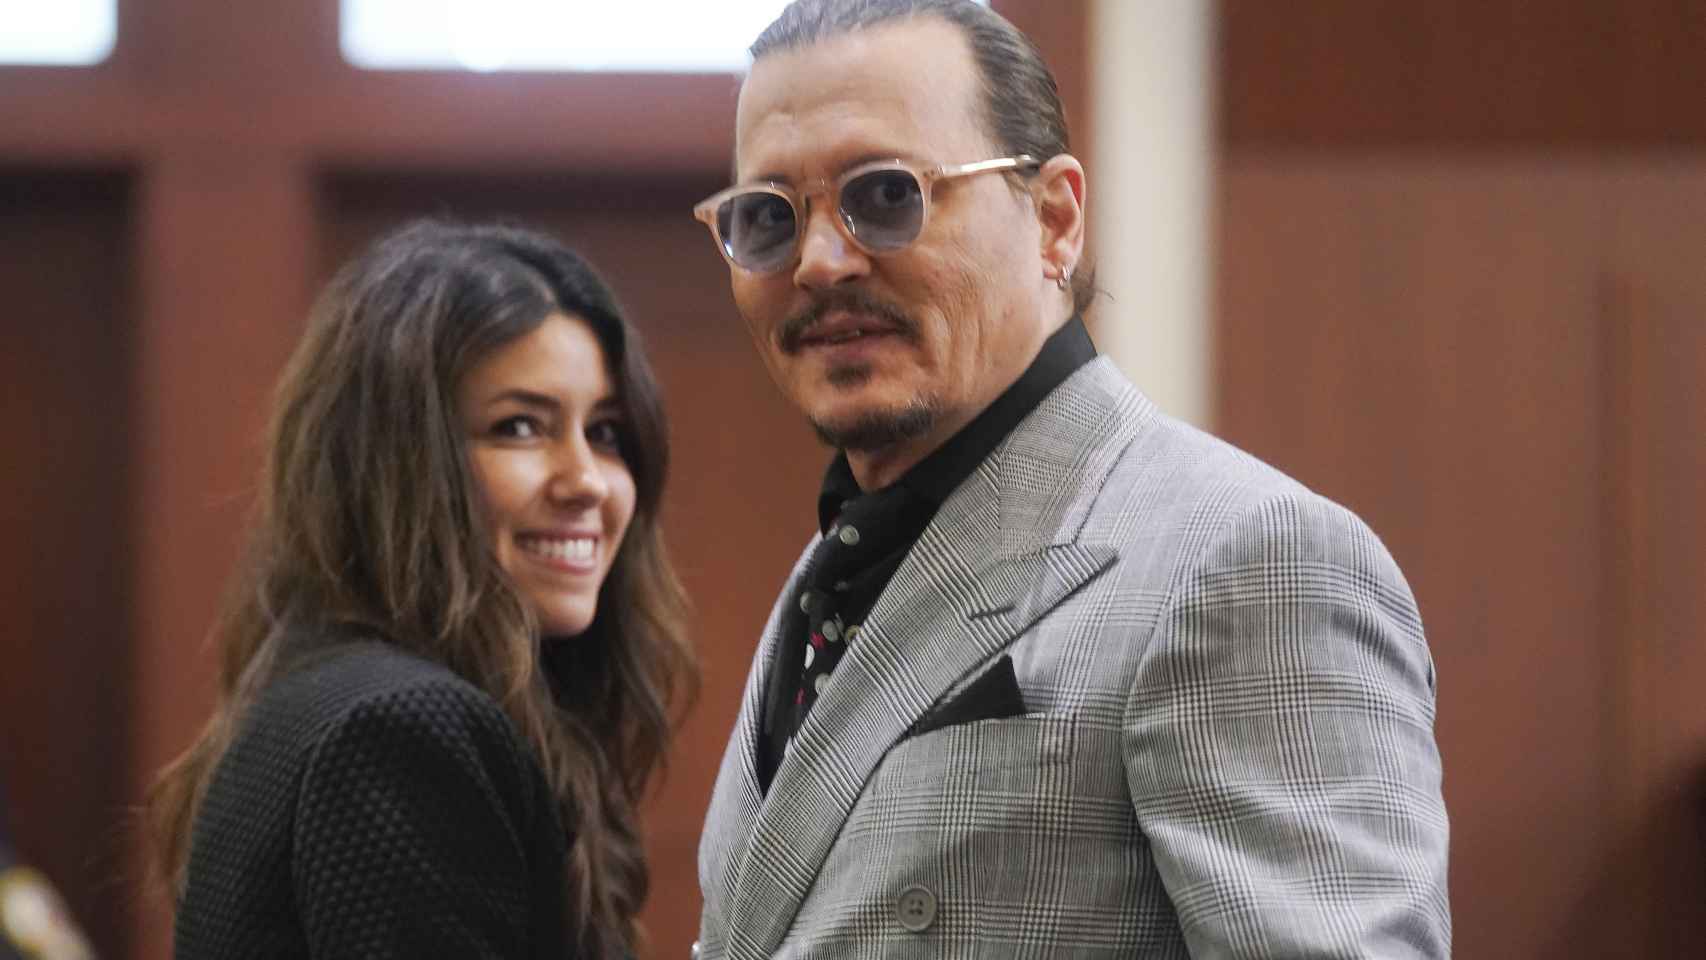 Johnny Depp en una imagen durante la celebración del juicio.